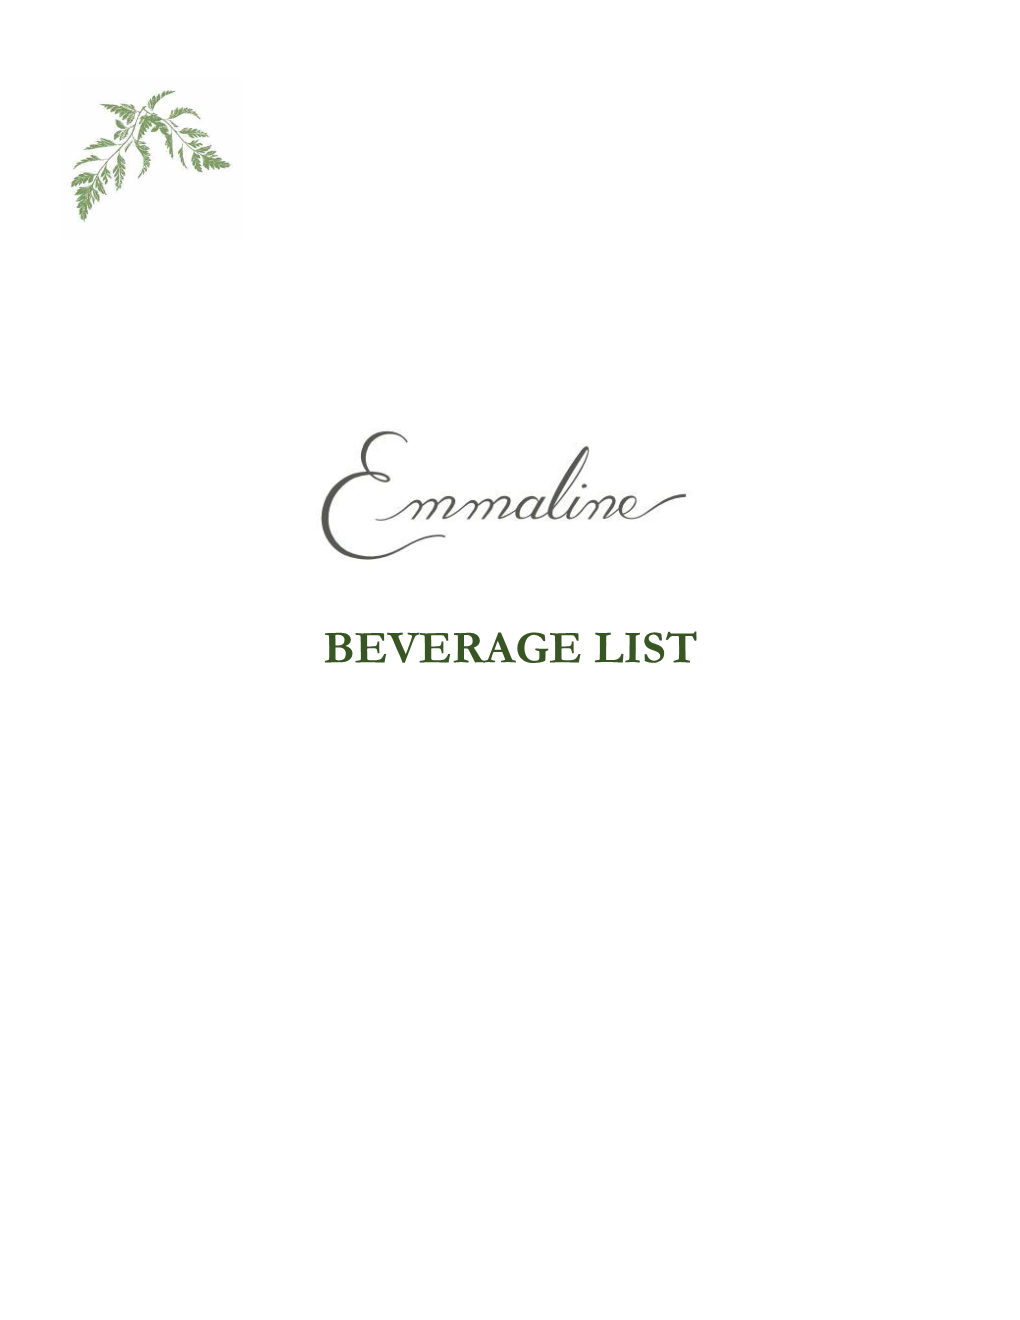 Beverage List